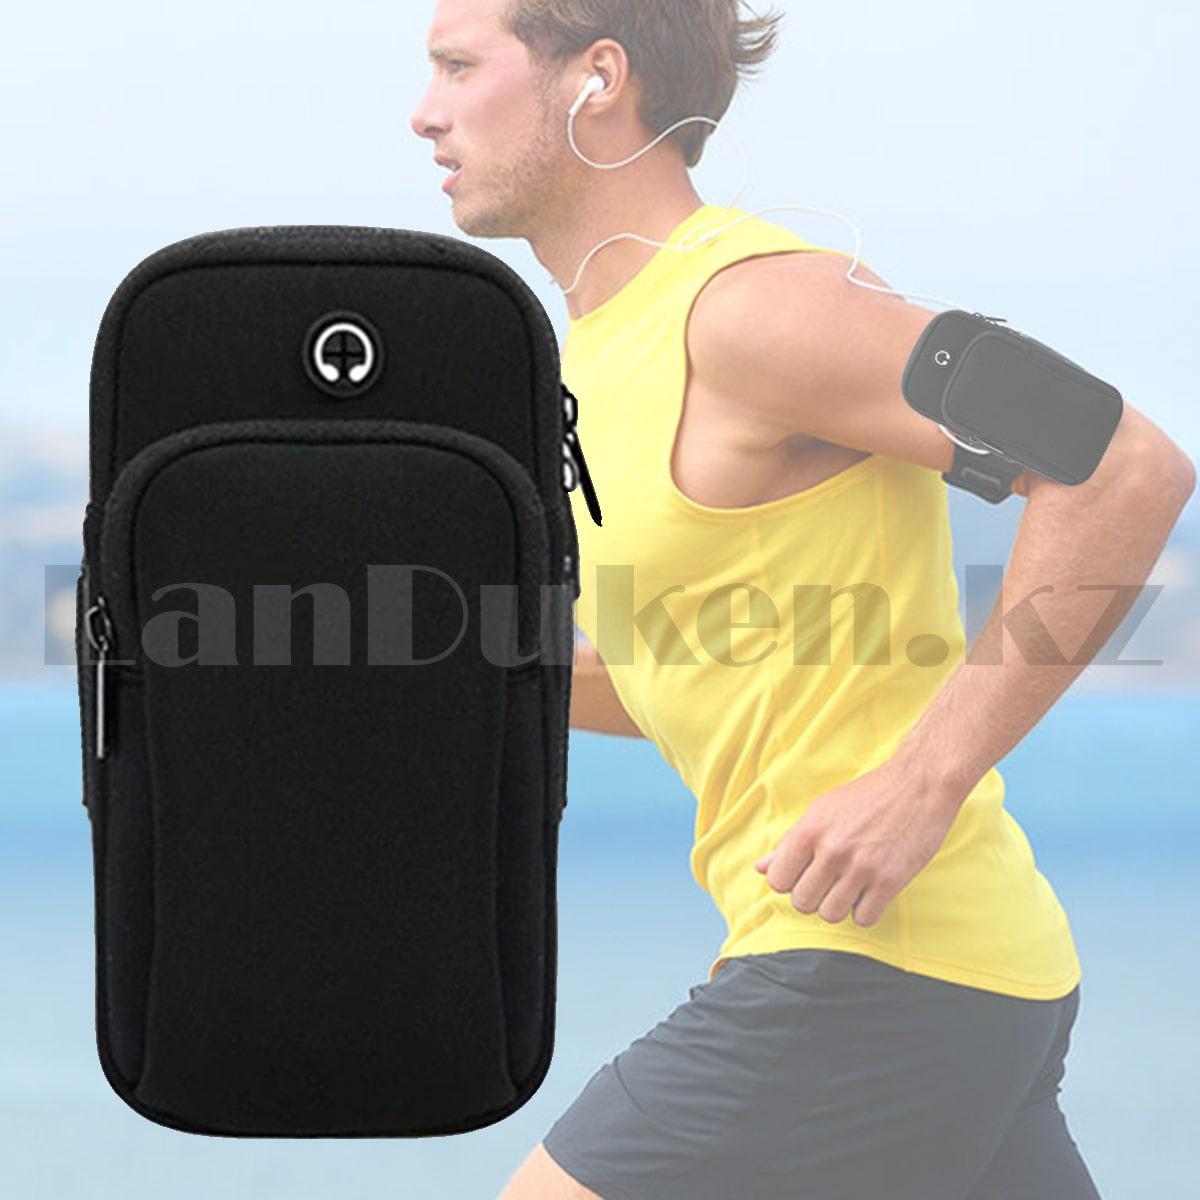 Универсальный спортивный чехол для телефона водонепроницаемый на руку черный, фото 1